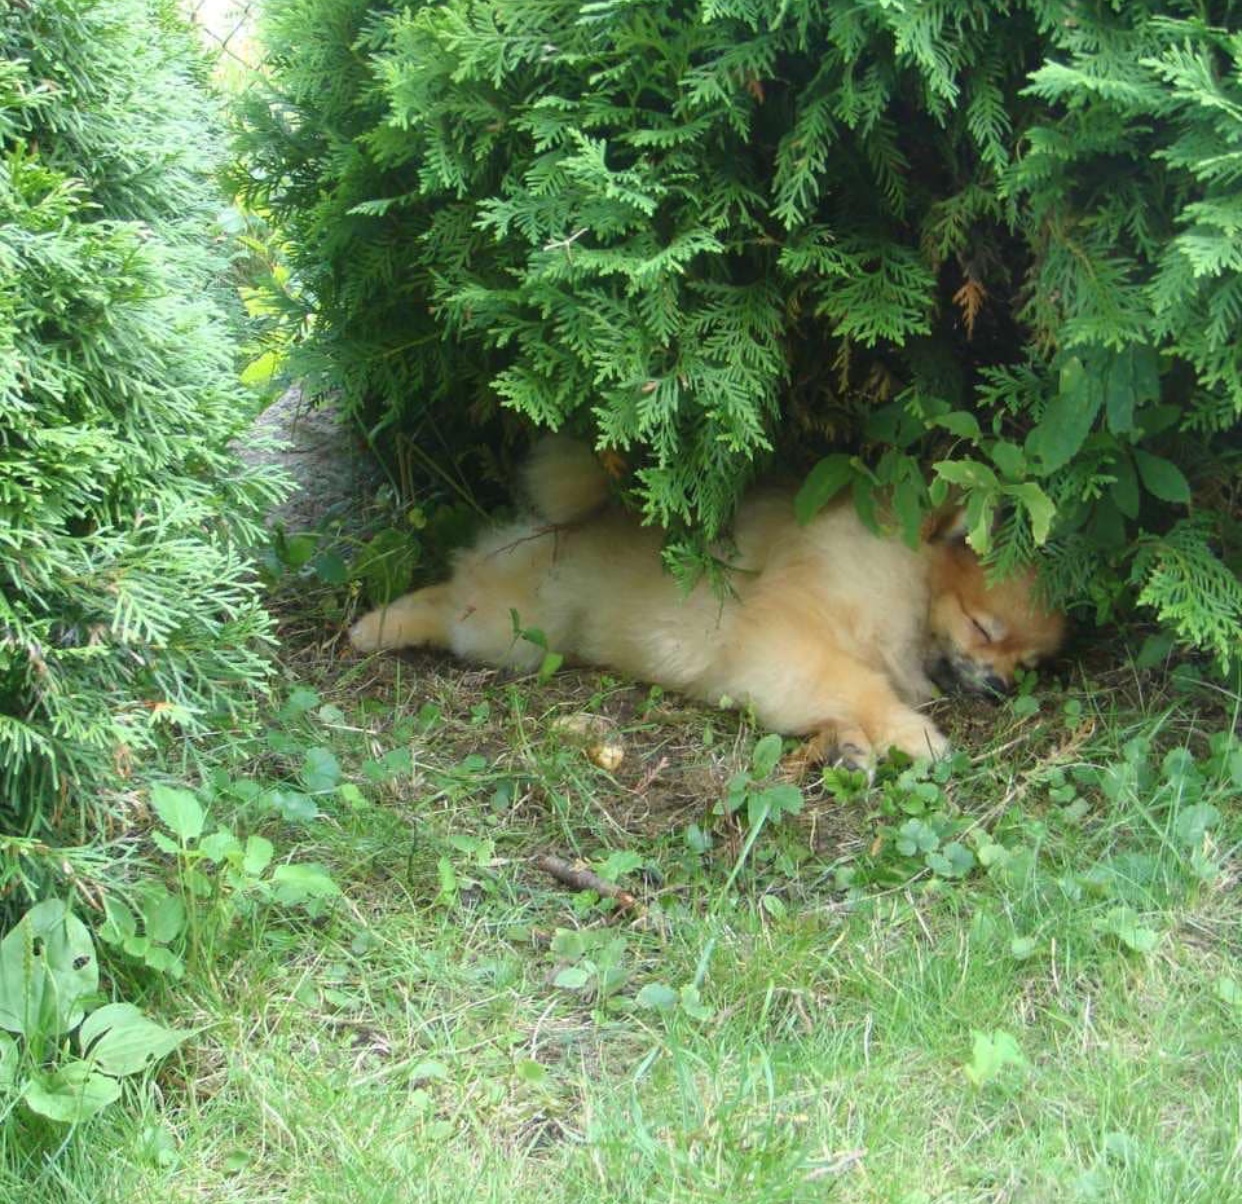 Pomeranian sleeping below a pine tree